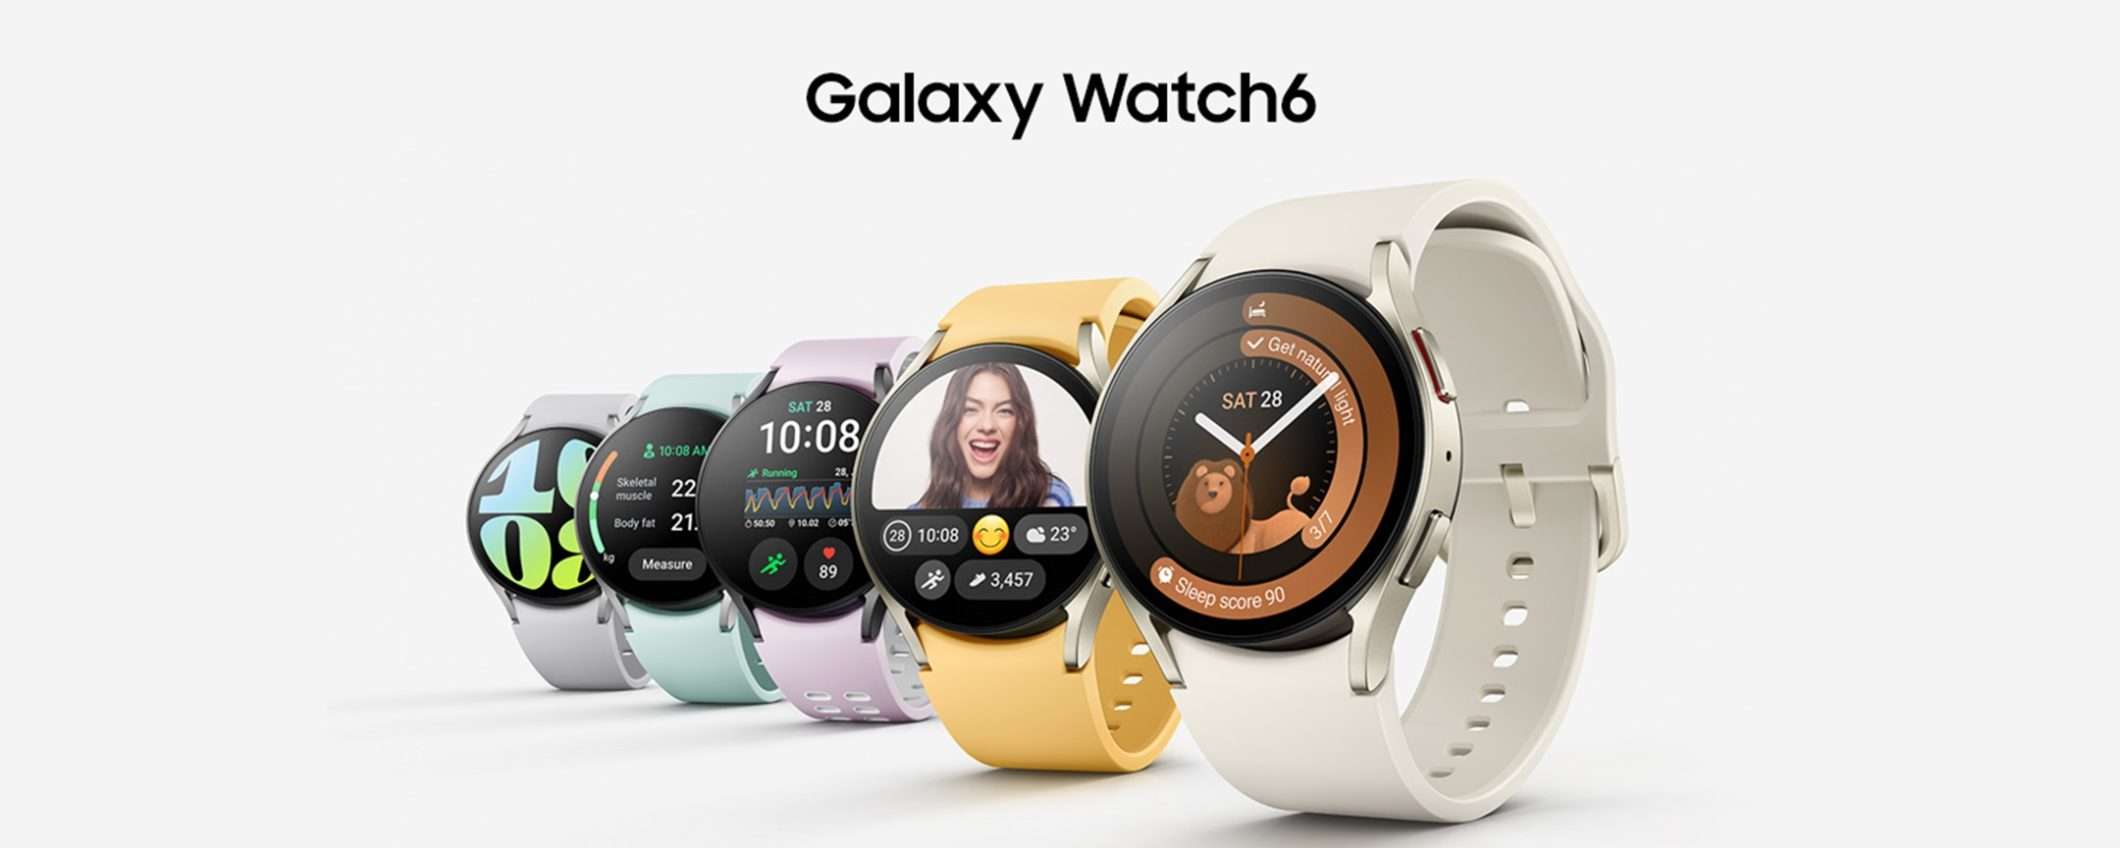 Samsung Galaxy Watch6 LTE a soli 254€ su Amazon: correte e fate l'affare!